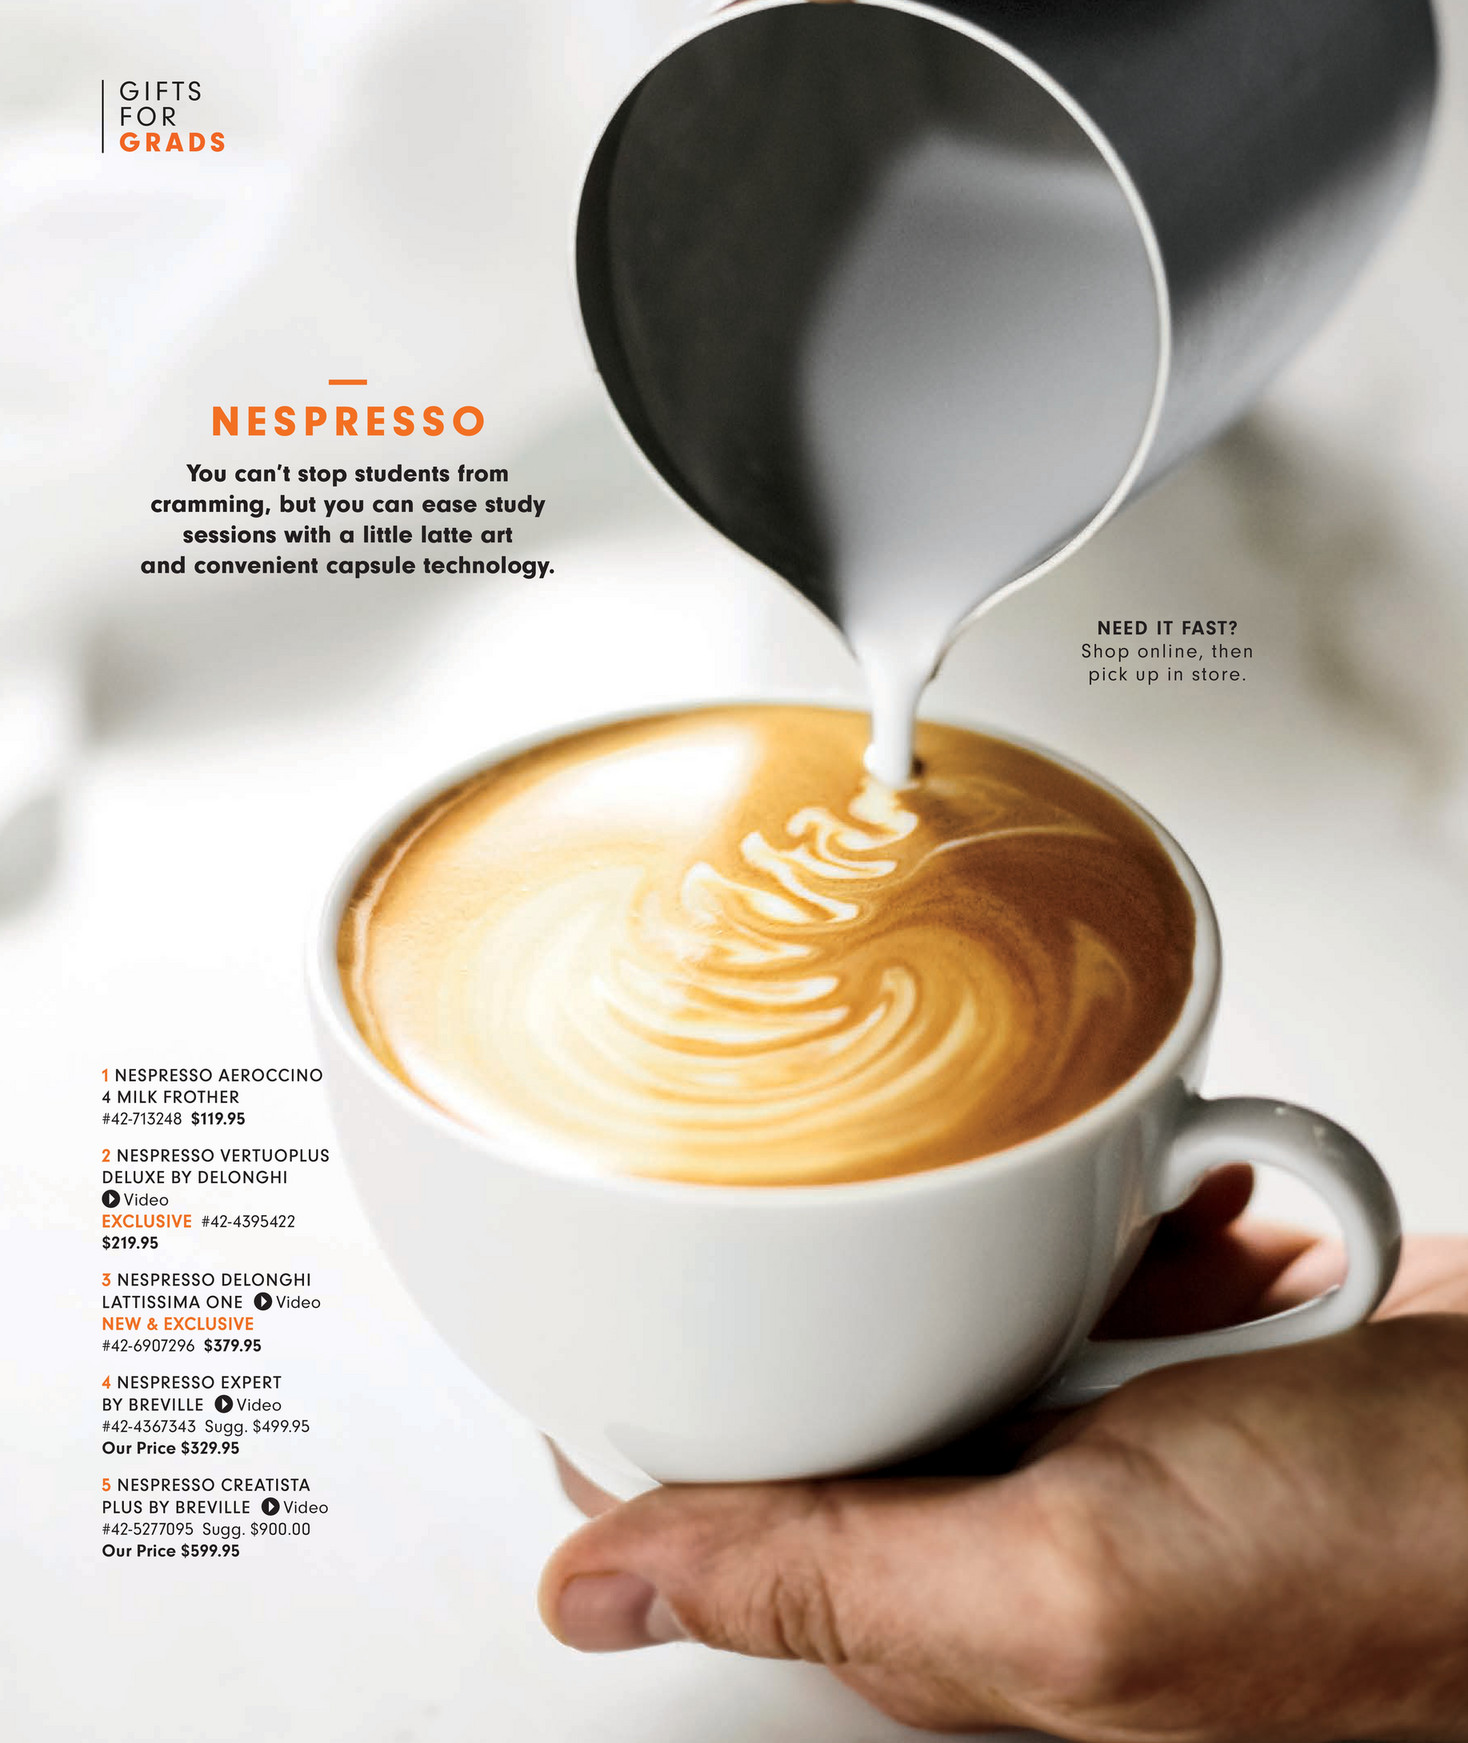 Williams-Sonoma - Spring 18 Vendor Funded Gift Guide - Nespresso Aeroccino 4 Milk